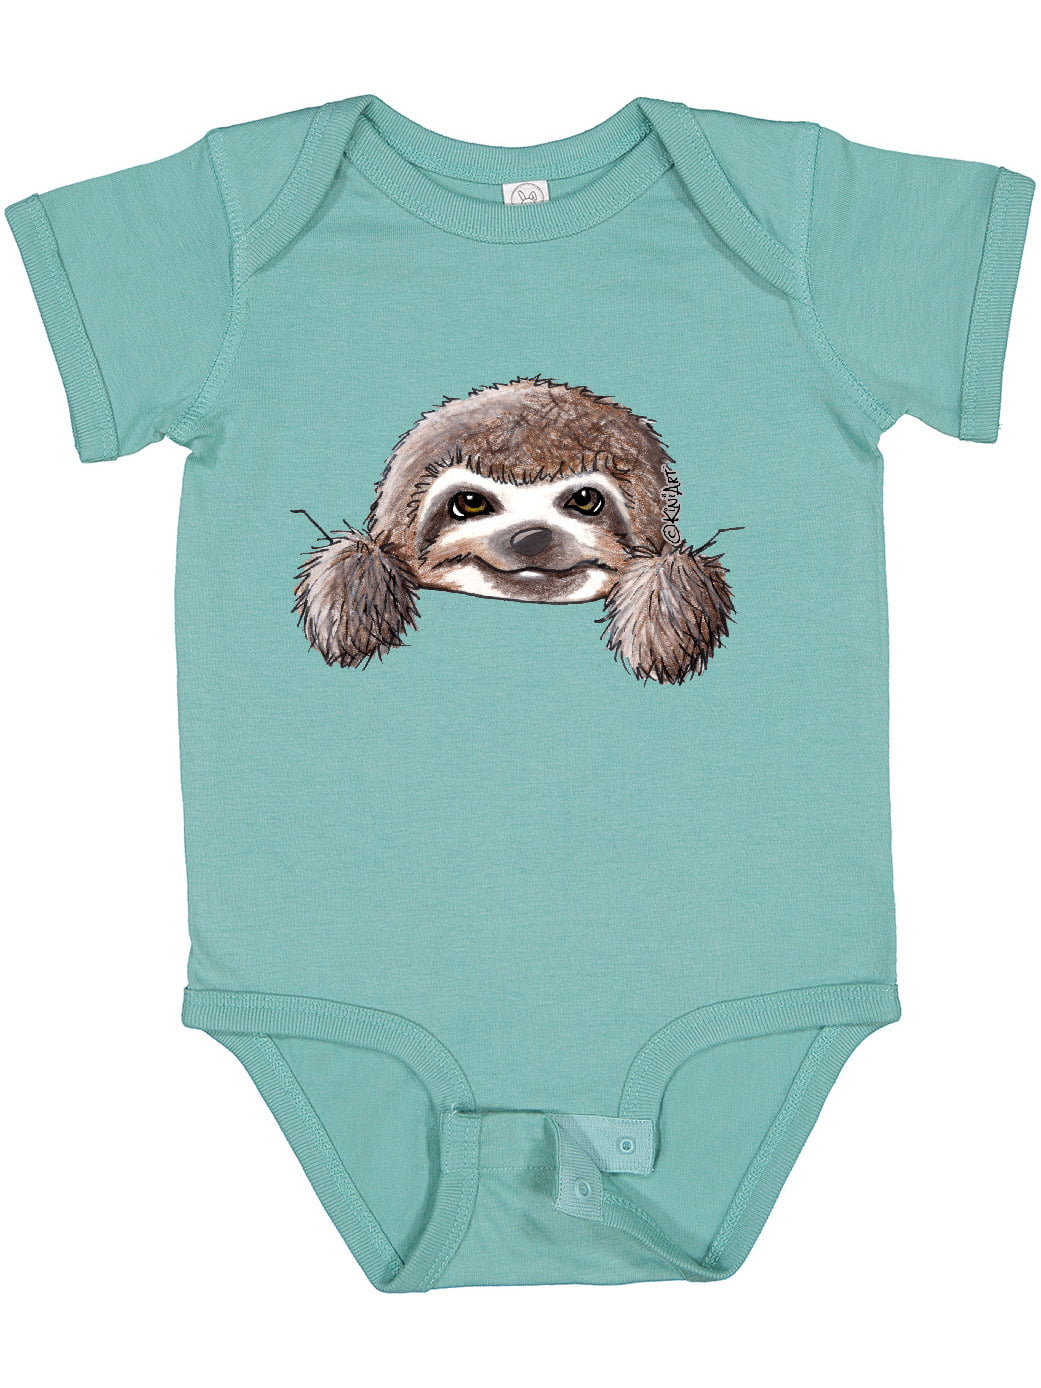 Unisex Baby Short Sleeve Jumper Bodysuit Vintage Sloth 1 Toddler Jumpsuit 